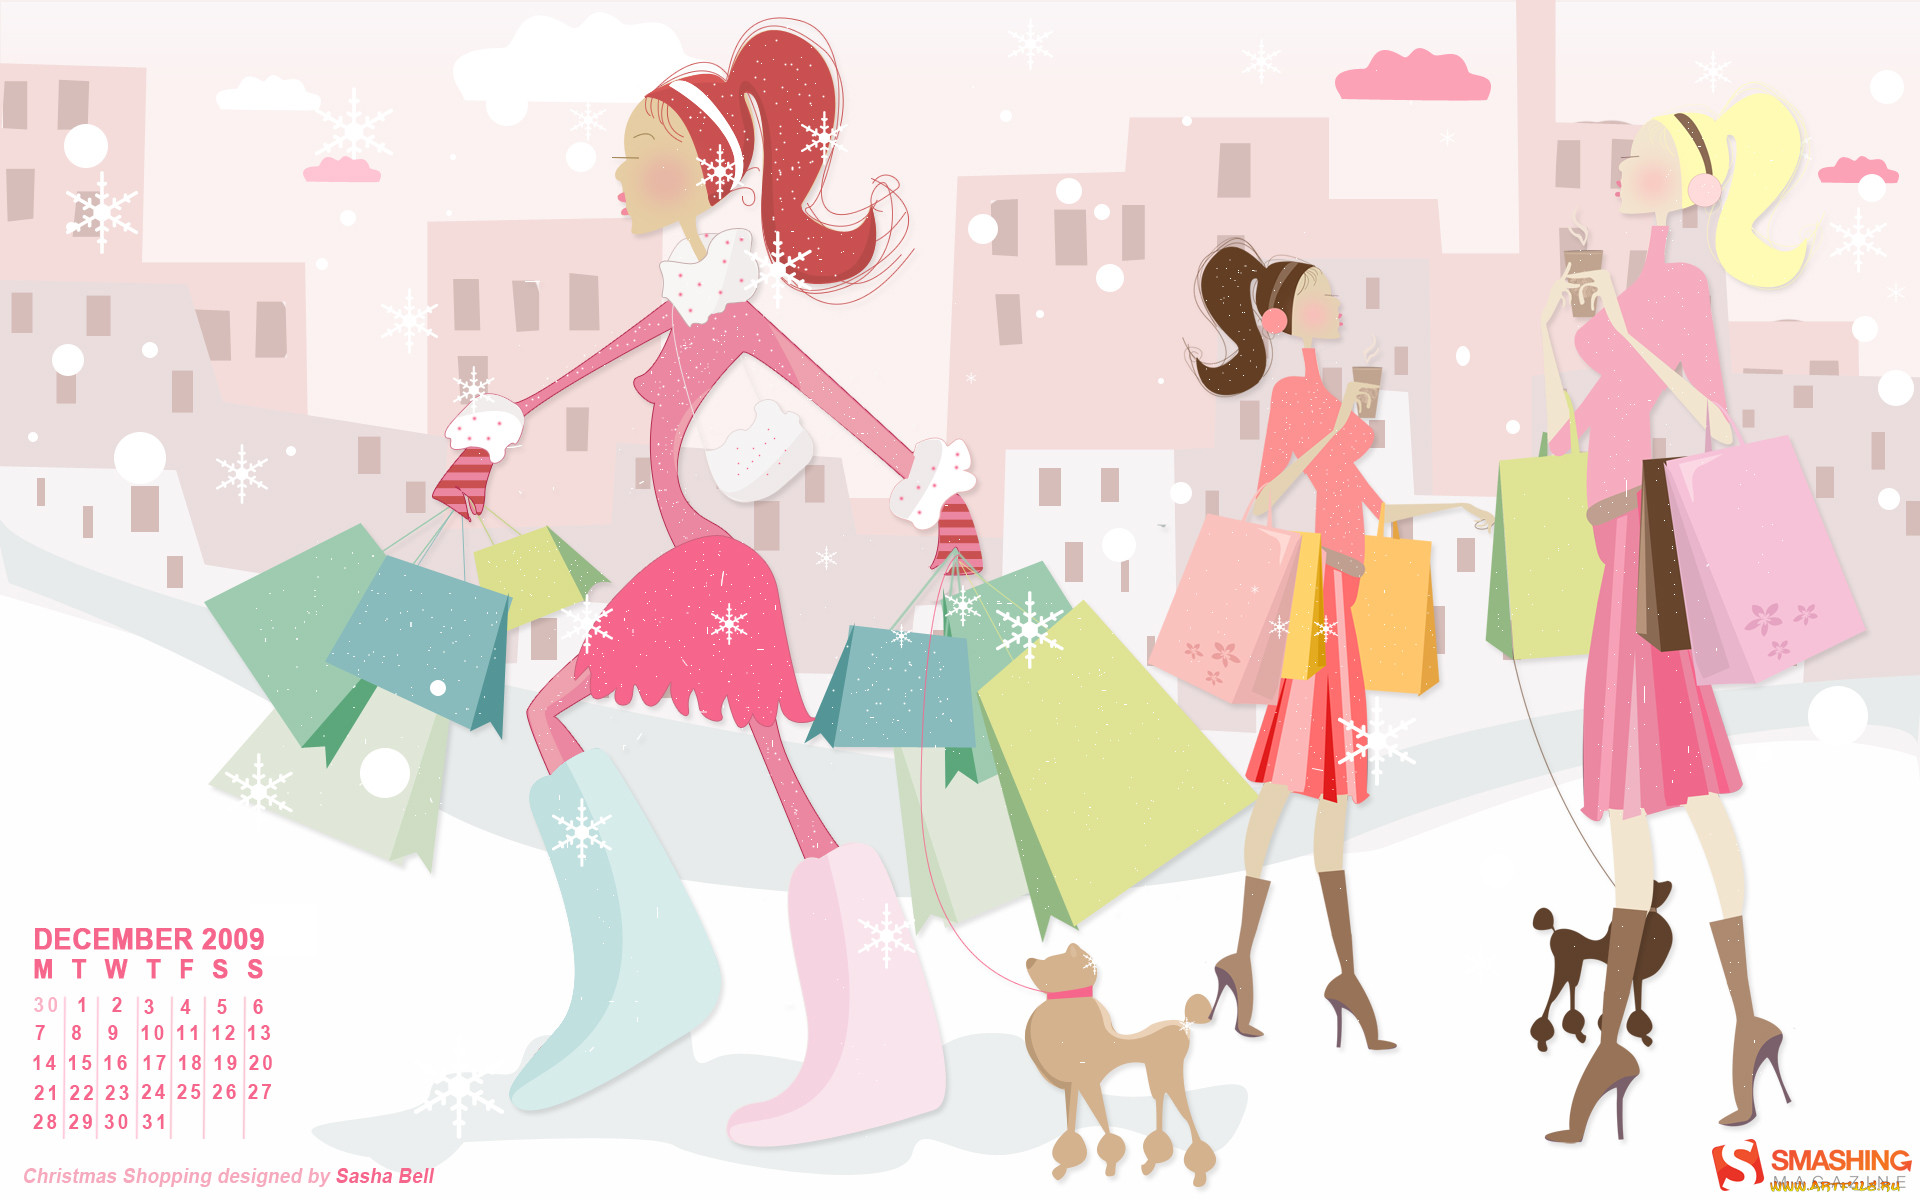 How i do my shopping. Фоновое изображение для магазина одежды. Картинки для баннера магазин одежды. Модная одежда фон. Картинки для интернет магазина.